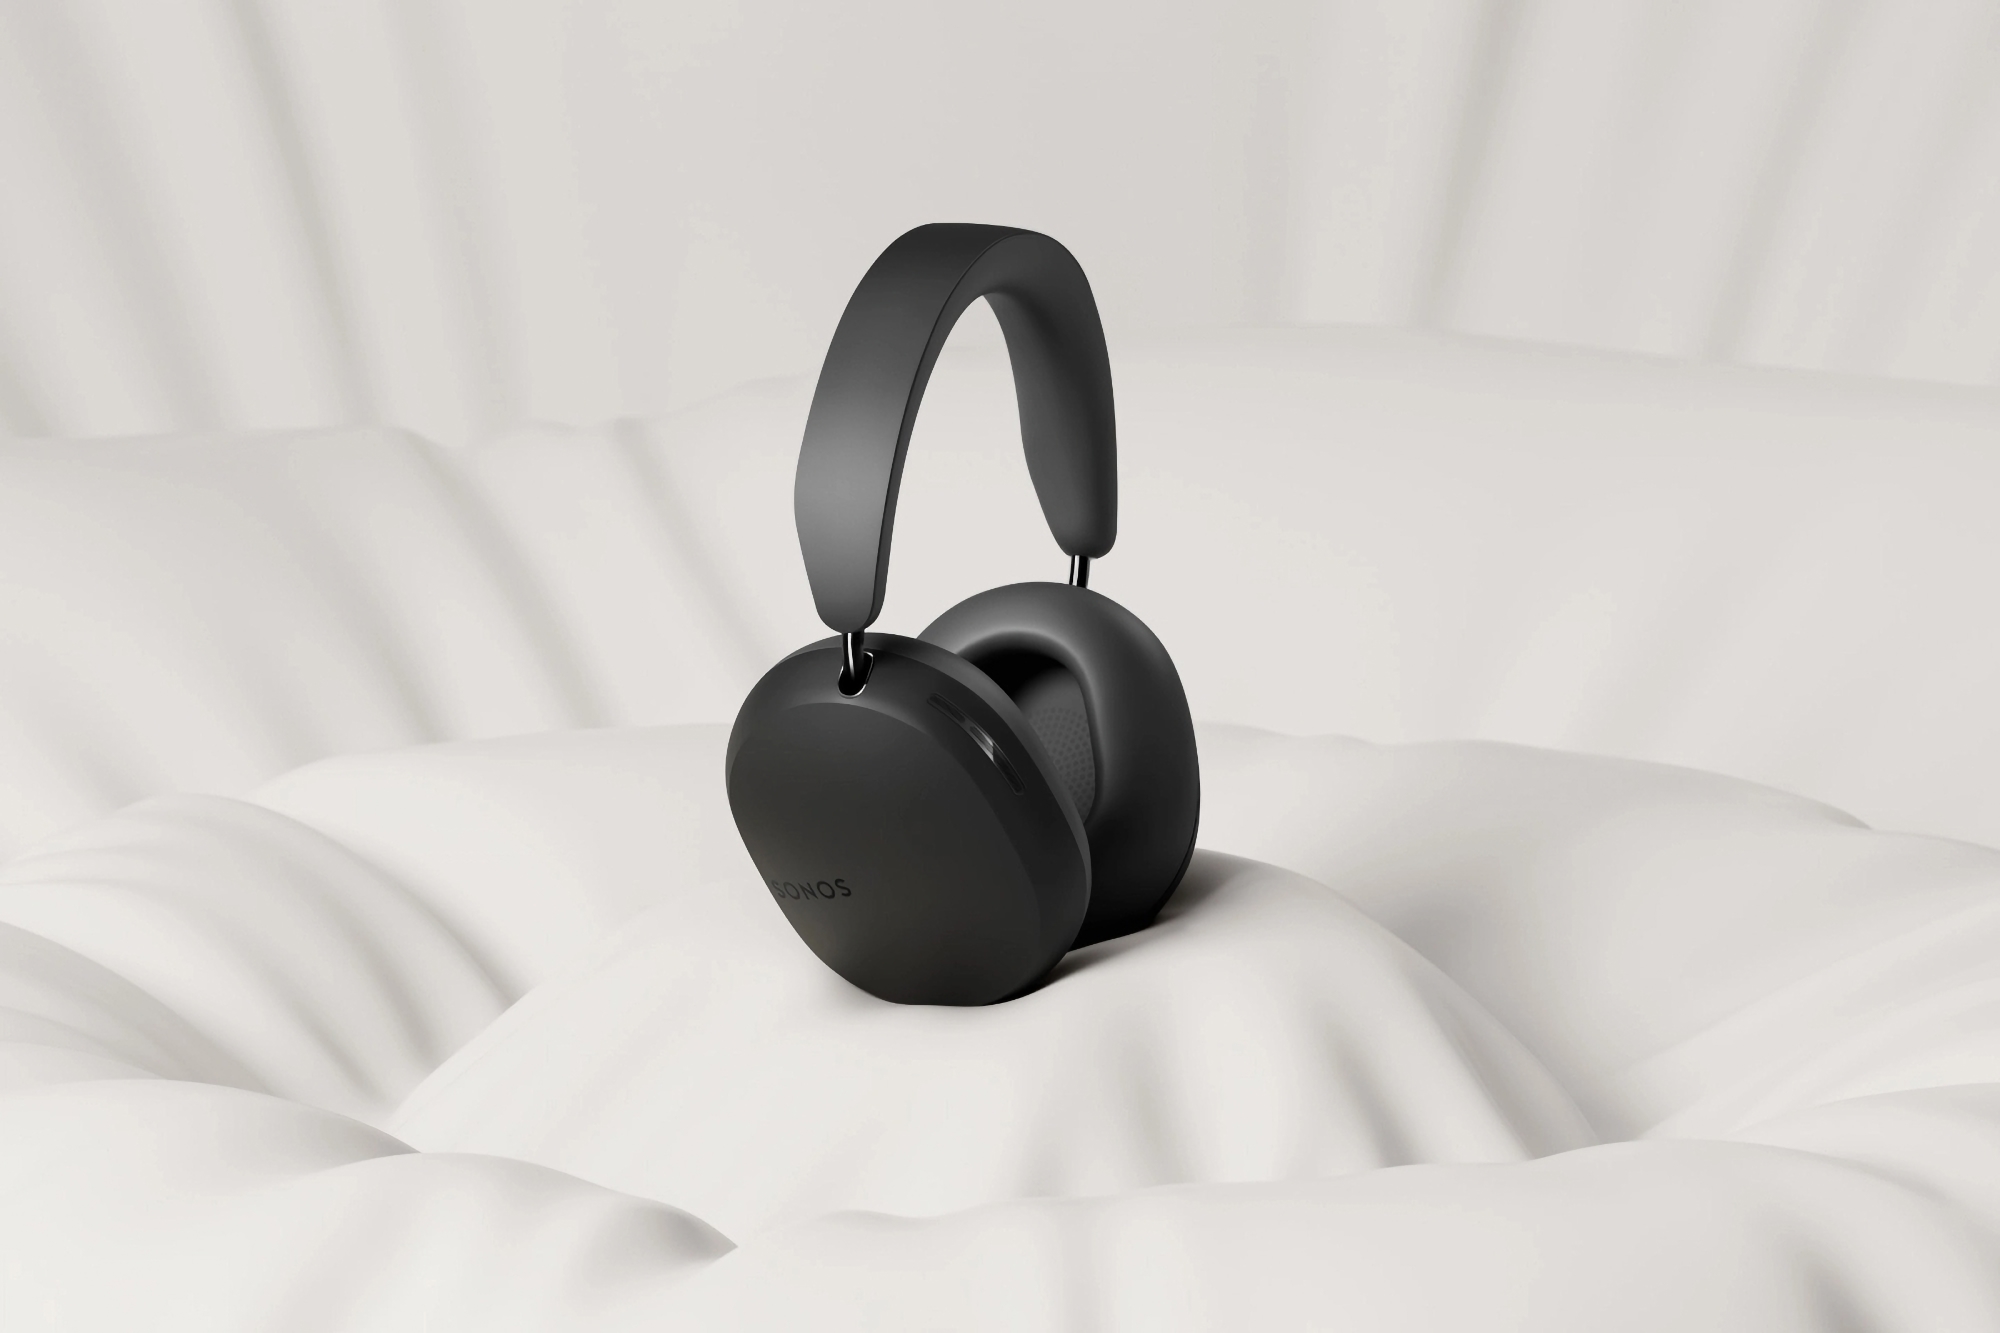 Sonos zaprezentował Ace, aby konkurować z AirPods Max firmy Apple: pierwsze bezprzewodowe słuchawki marki za 449 USD